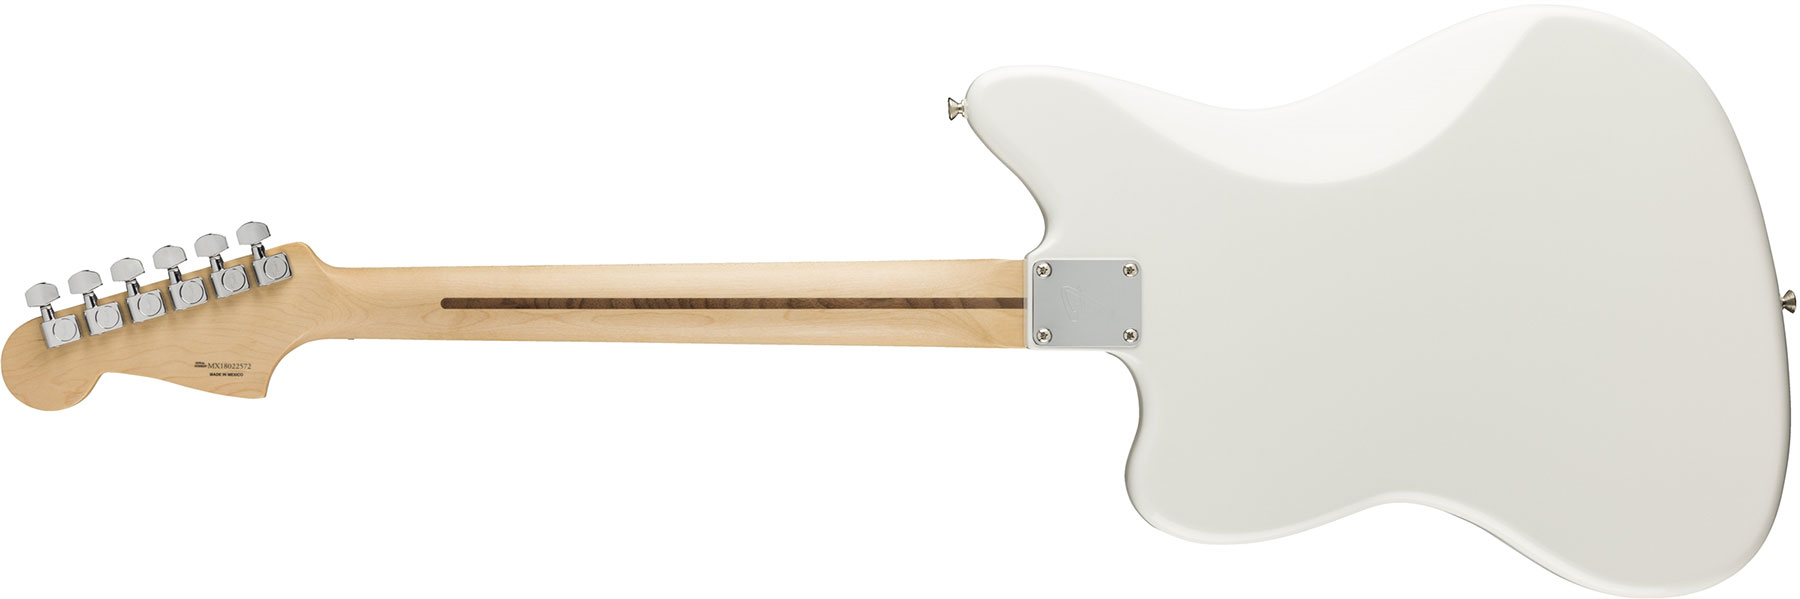 Fender Jazzmaster Player Mex Hh Pf - Polar White - Retro-rock elektrische gitaar - Variation 1